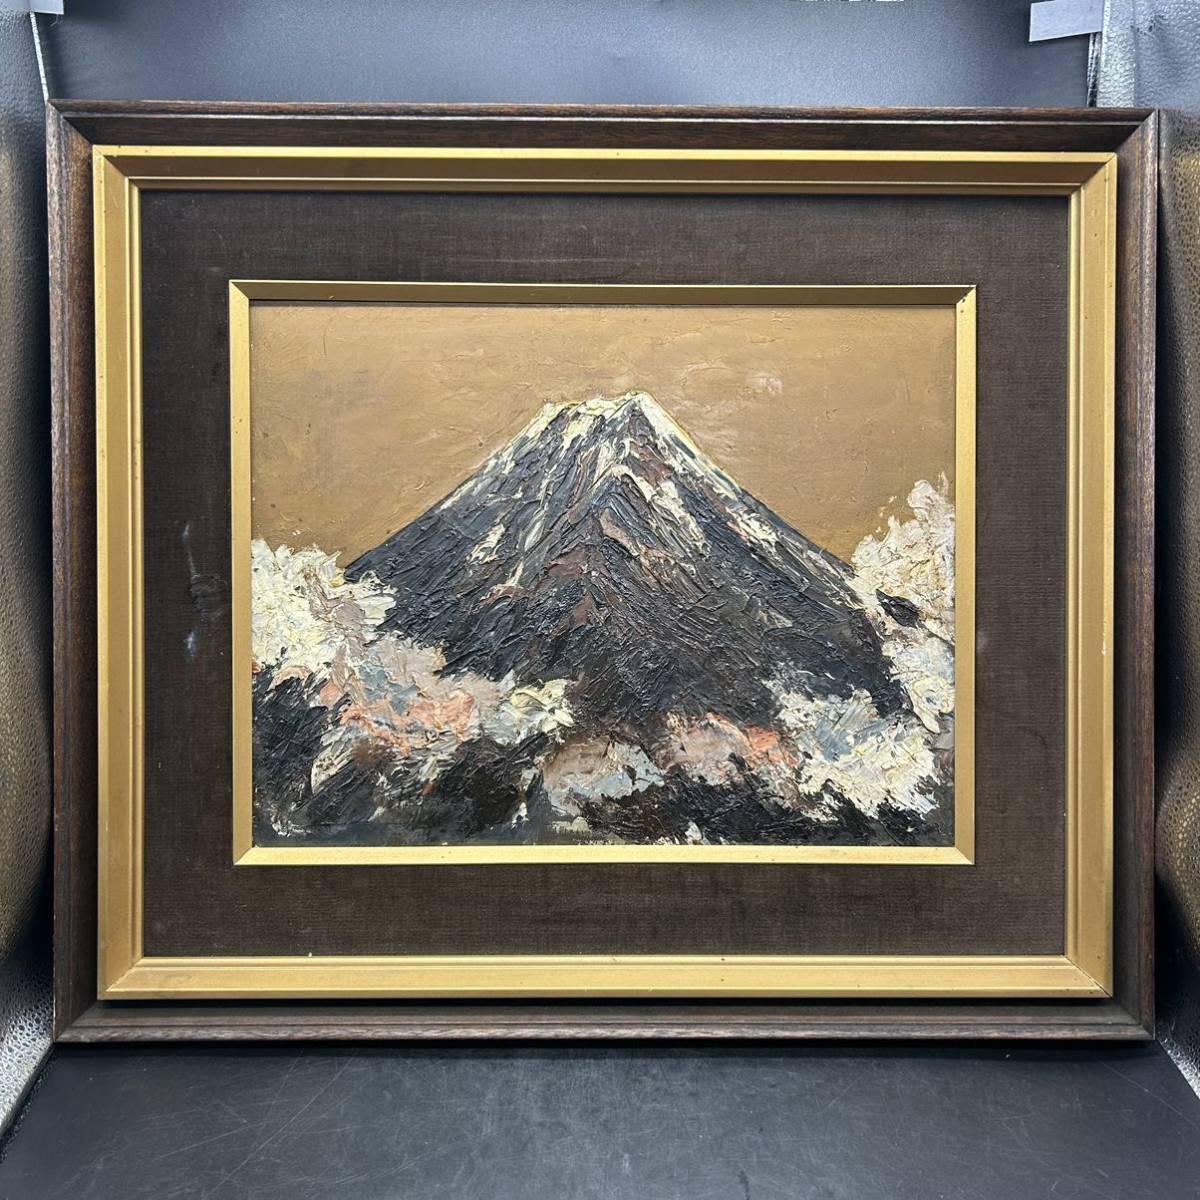 Ölgemälde Shigeo Yamada Japanisches Gemälde Mt. Fuji 1966 Gerahmtes Stillleben Authentisches Gemälde 573, Malerei, Ölgemälde, Natur, Landschaftsmalerei